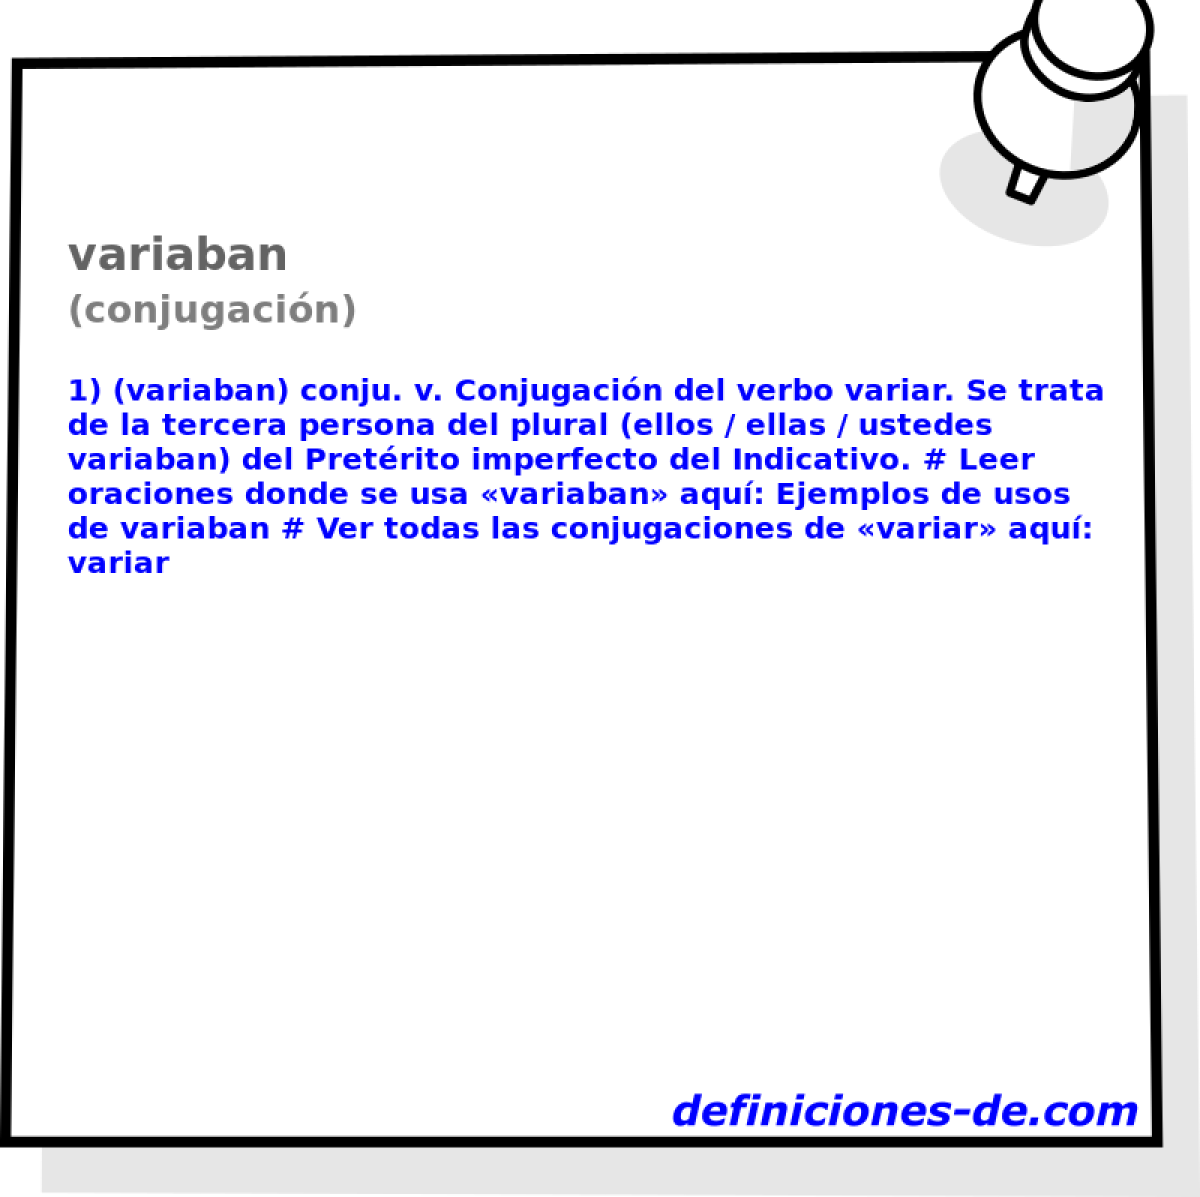 variaban (conjugacin)